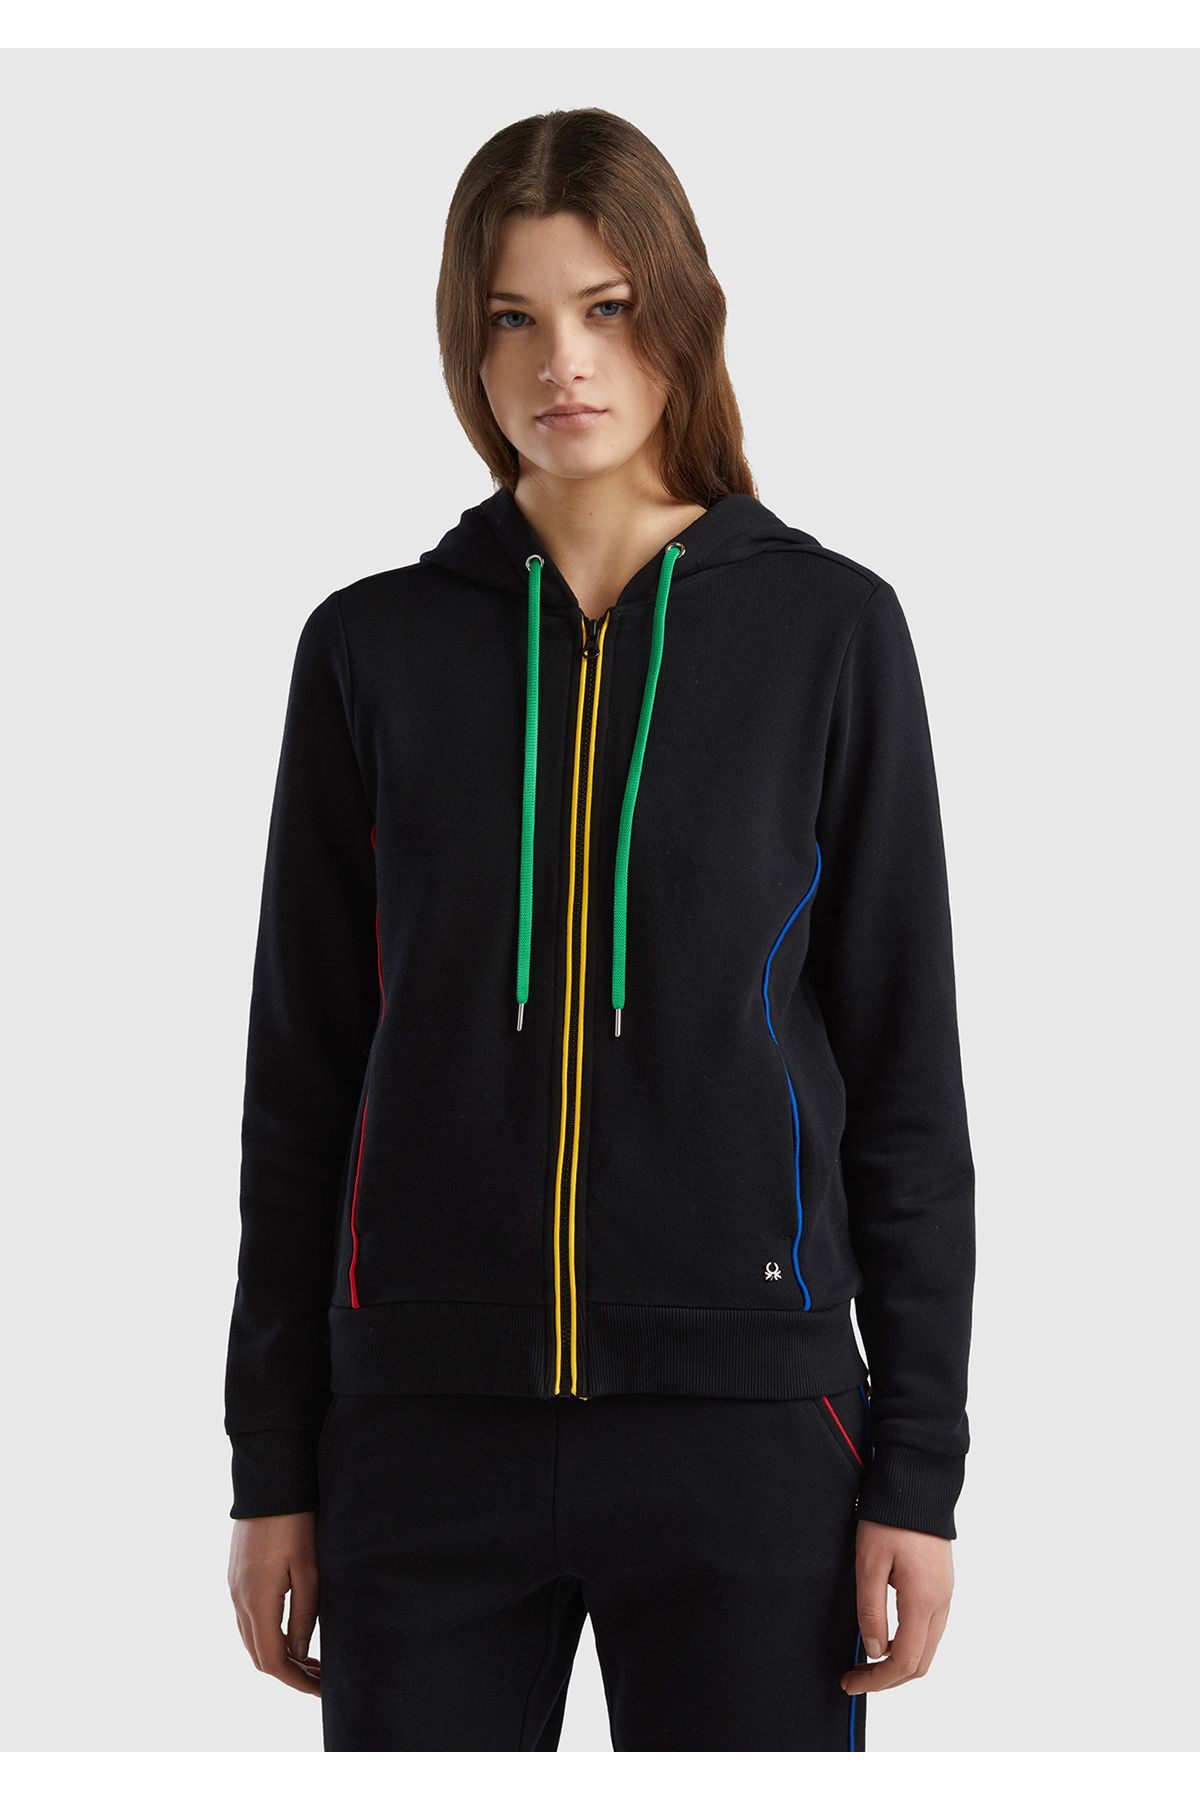 United Colors of Benetton Kadın Siyah %100 Koton Fermuarlı Kapşonlu Renkli Biyeli Sweatshirt